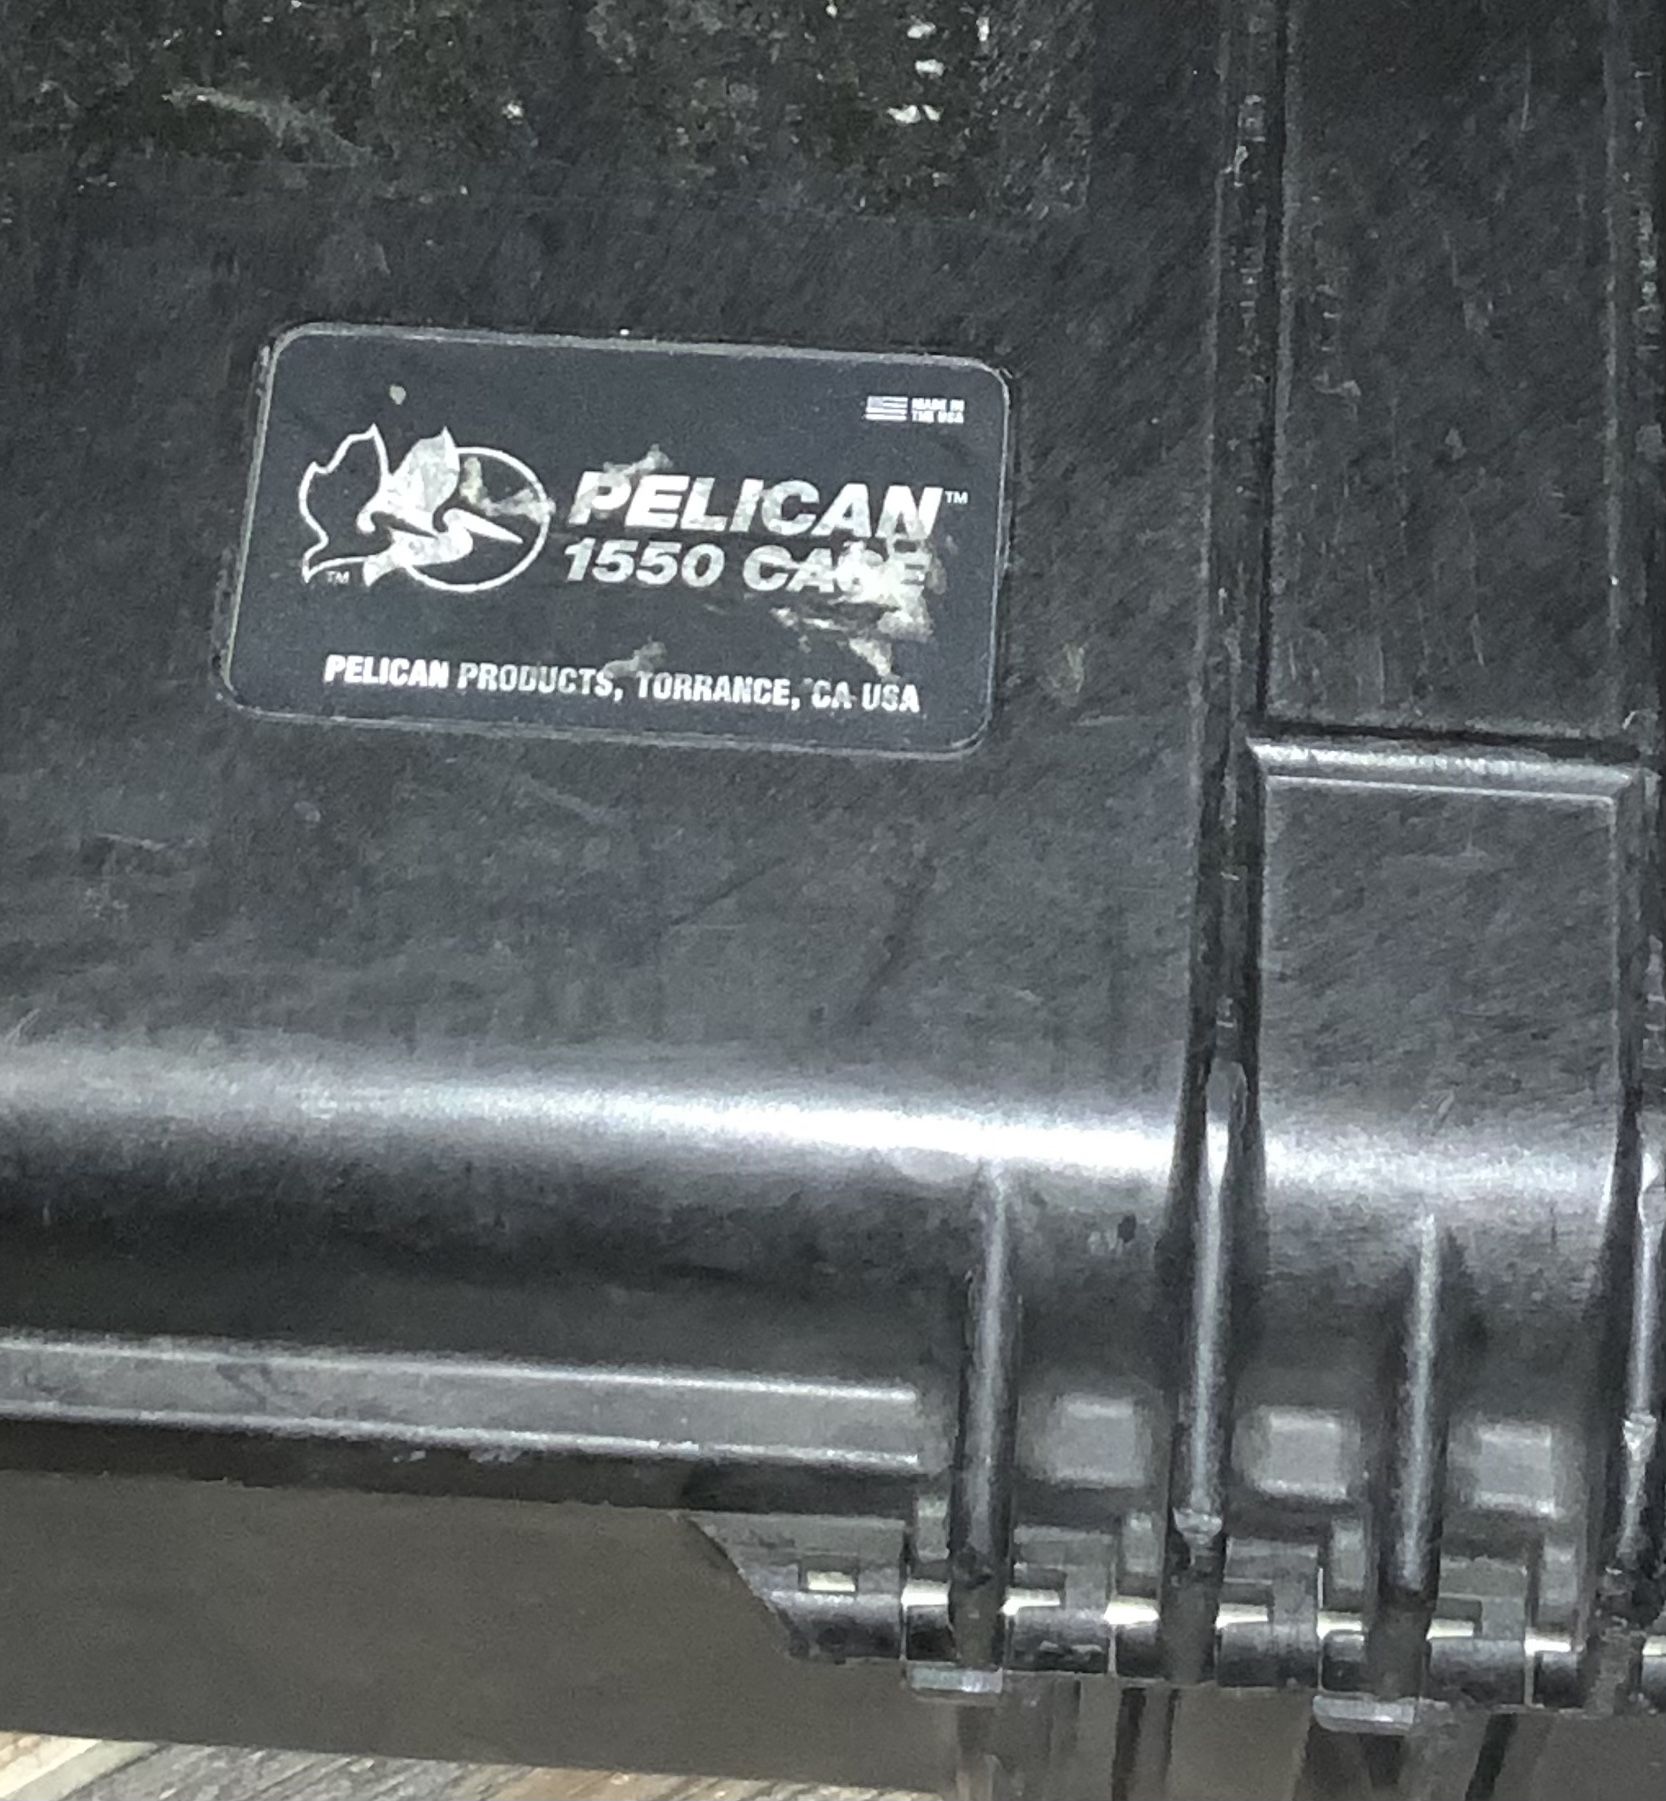 Pelican Case 1550 Model